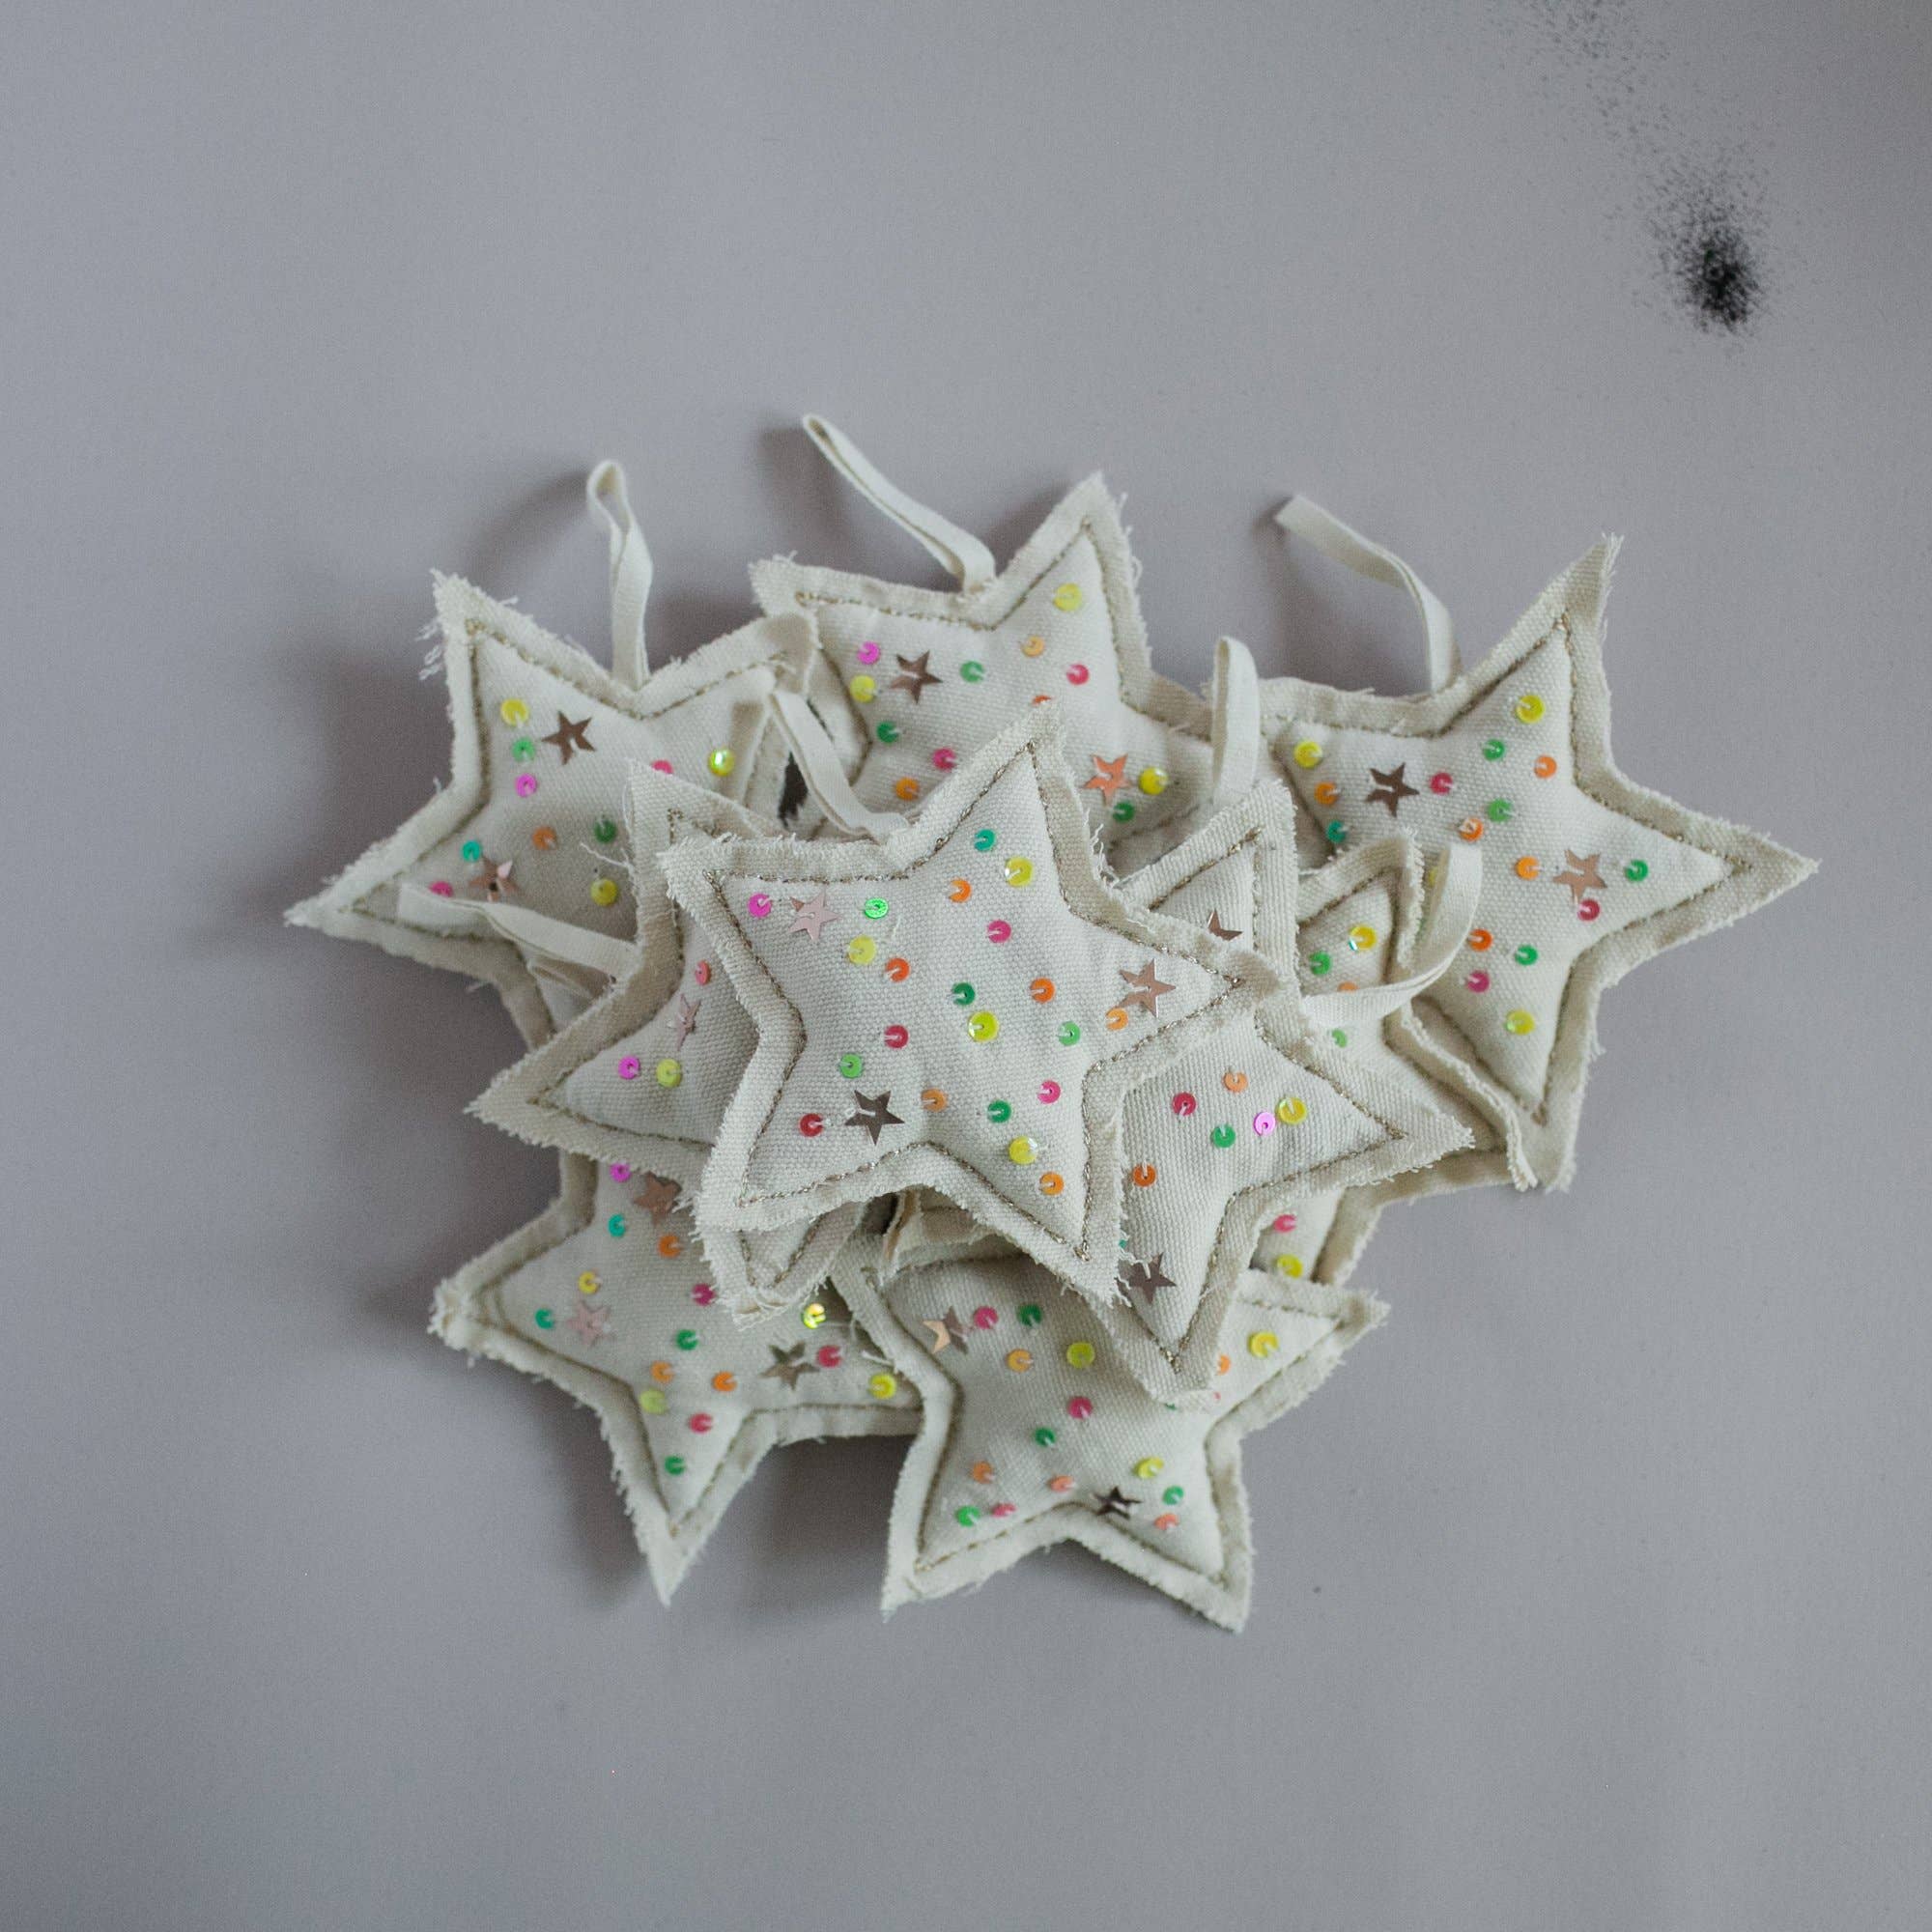 Neon Confetti Star - Cotton & Lavender filled Ornament